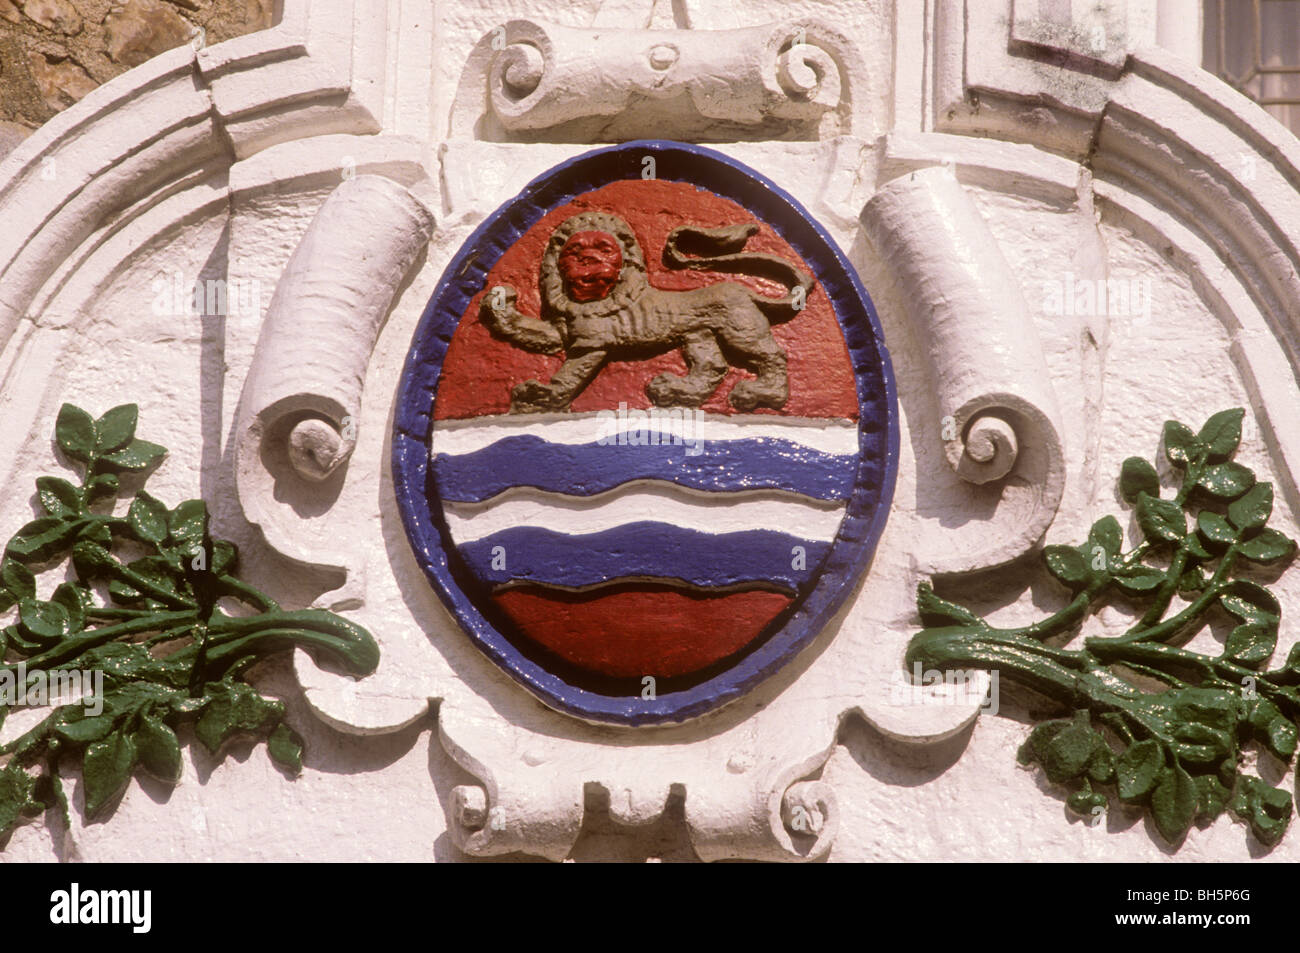 Lyme Regis, dans le Dorset, Ville blason, héraldique héraldique Guildhall UK English appareil appareils armoiries lions lion Banque D'Images